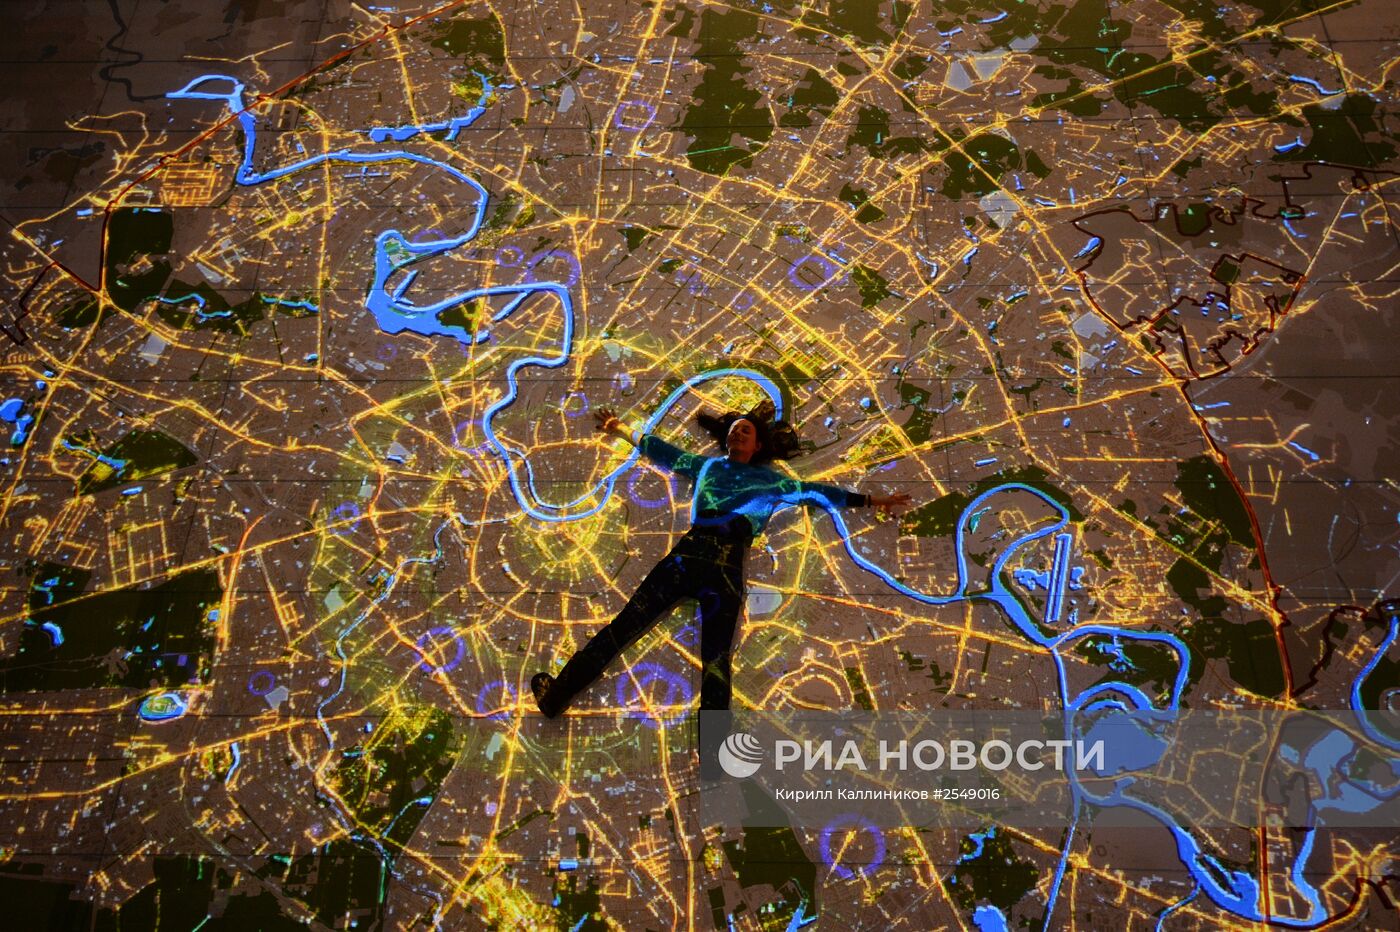 Открытие зала Интерактивной карты Москвы